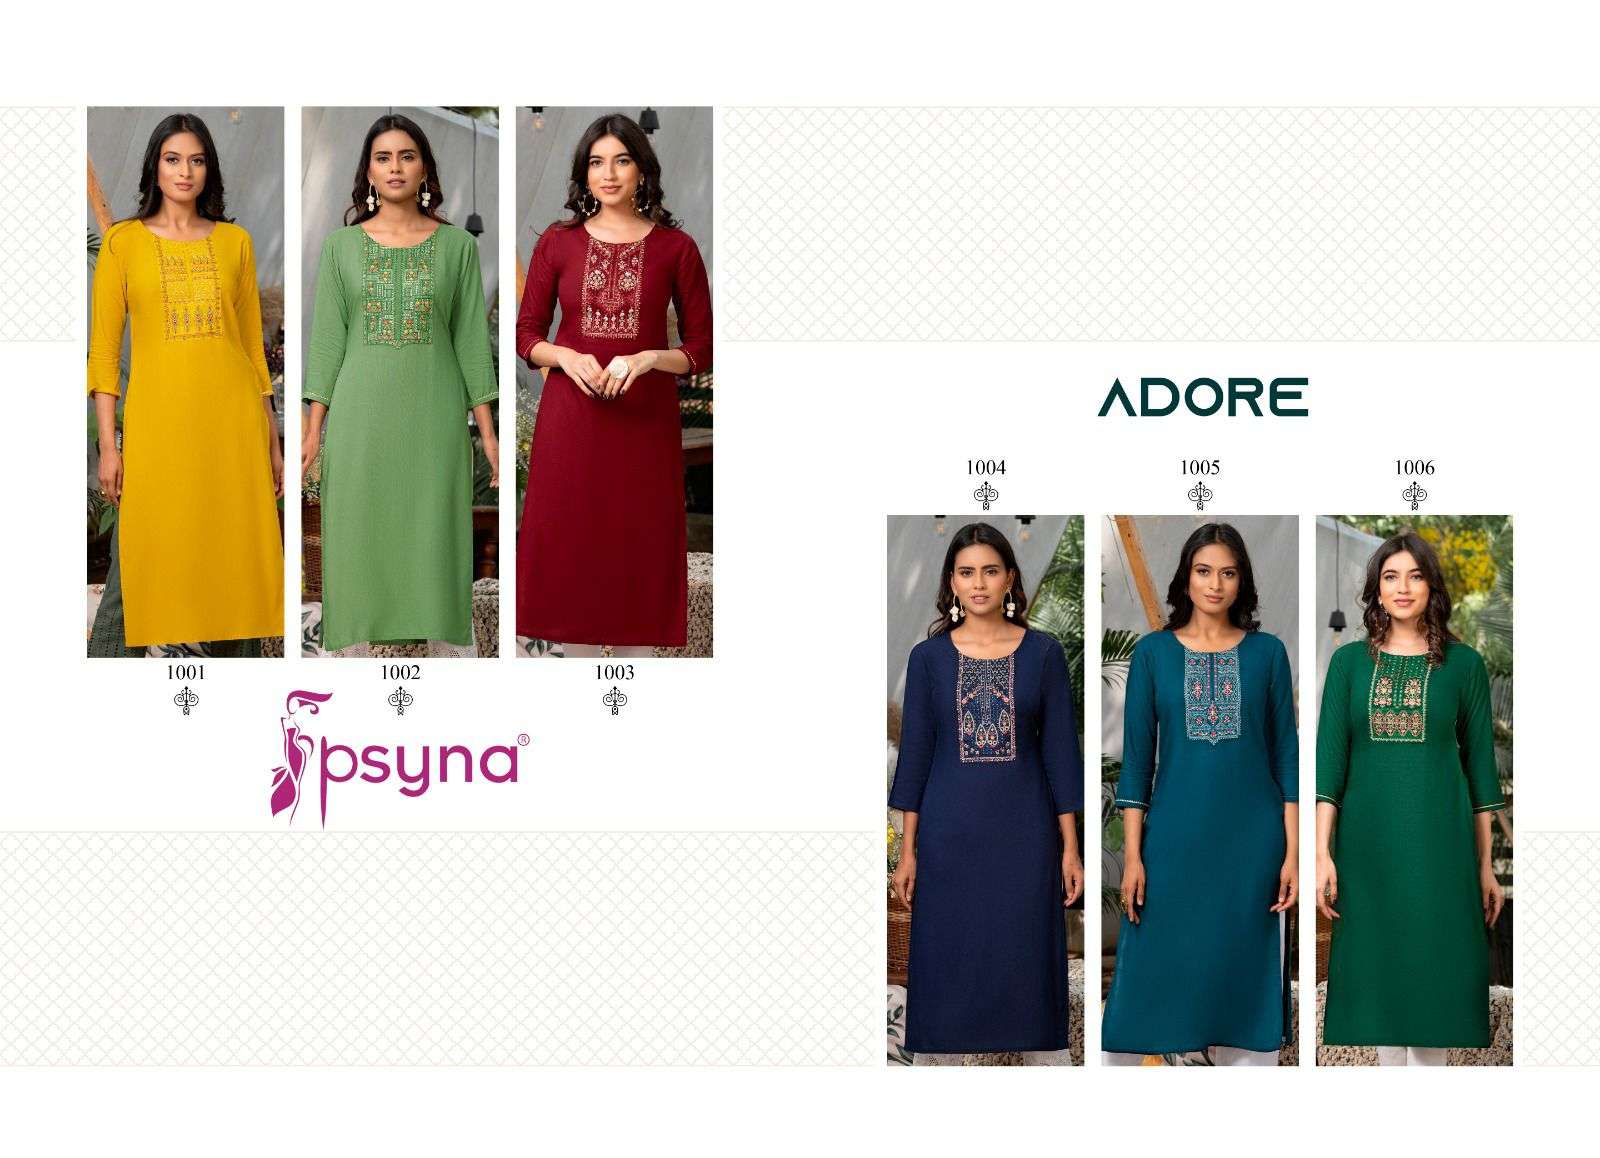 psyna adore 1001-1006 series rayon designer kurtis catalogue manufacturer surat 